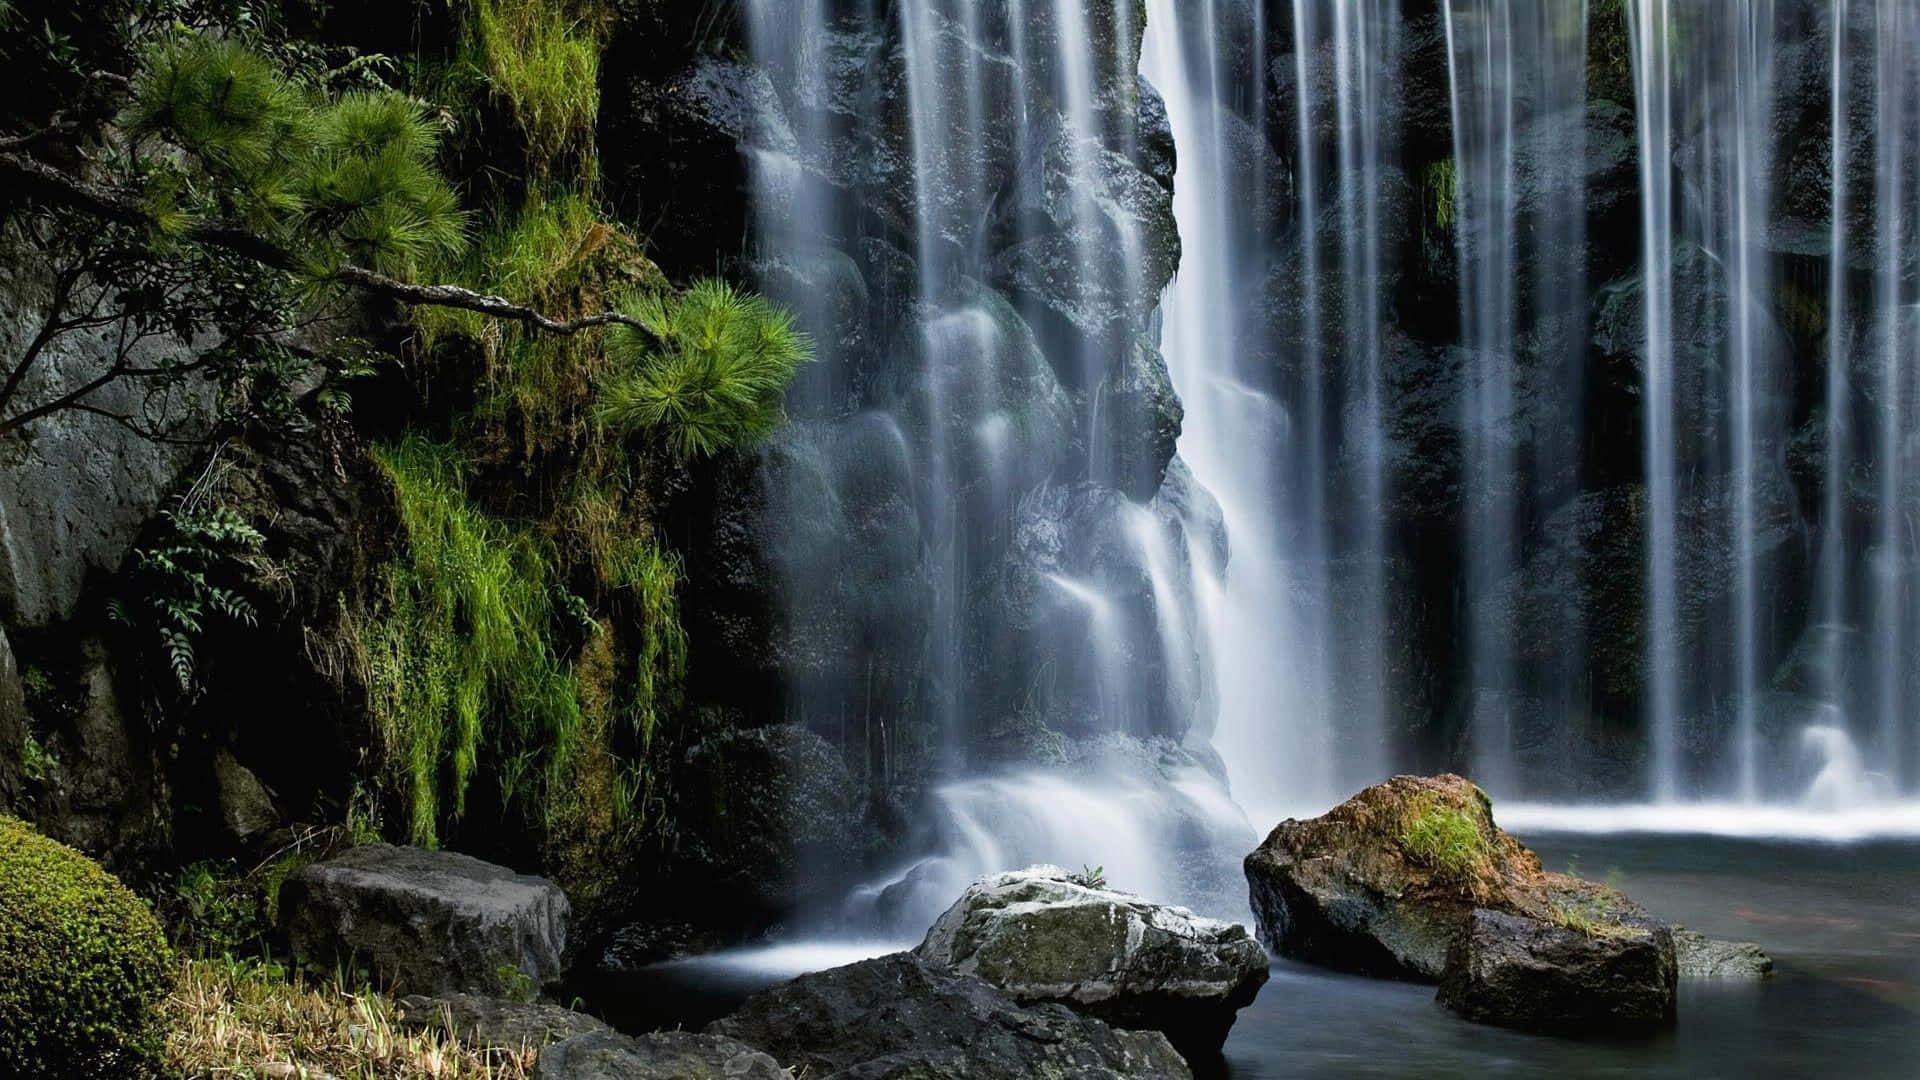 Cachoeiramágica - Uma Bela Cascata De Água Em Uma Paisagem Exuberante De Verde.